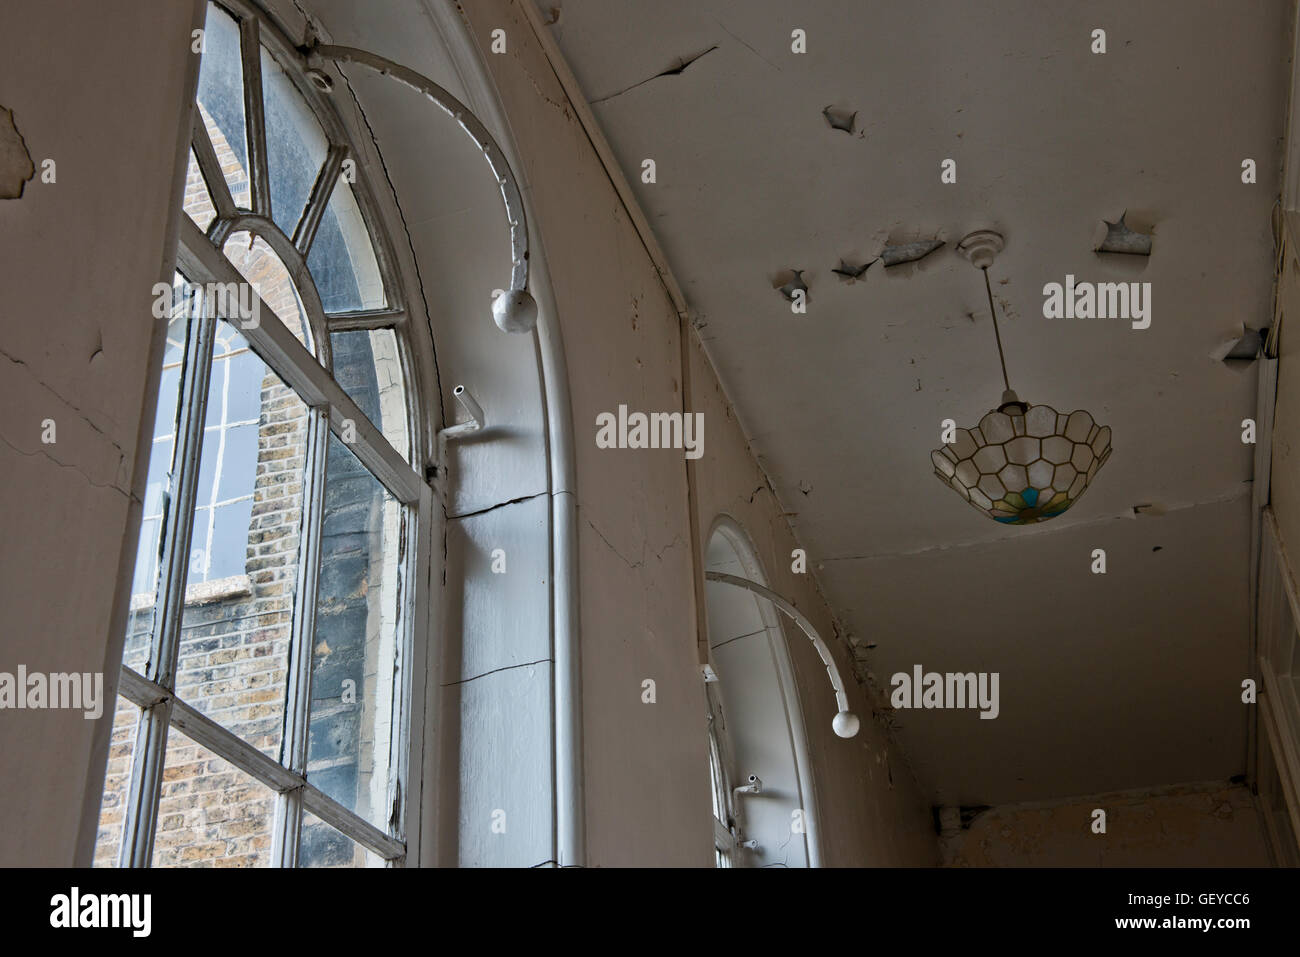 Innere Bild zeigt ein Teil des geschlossenen St Clements Krankenhauses im Londoner East End vor der großen Sanierung. Stockfoto